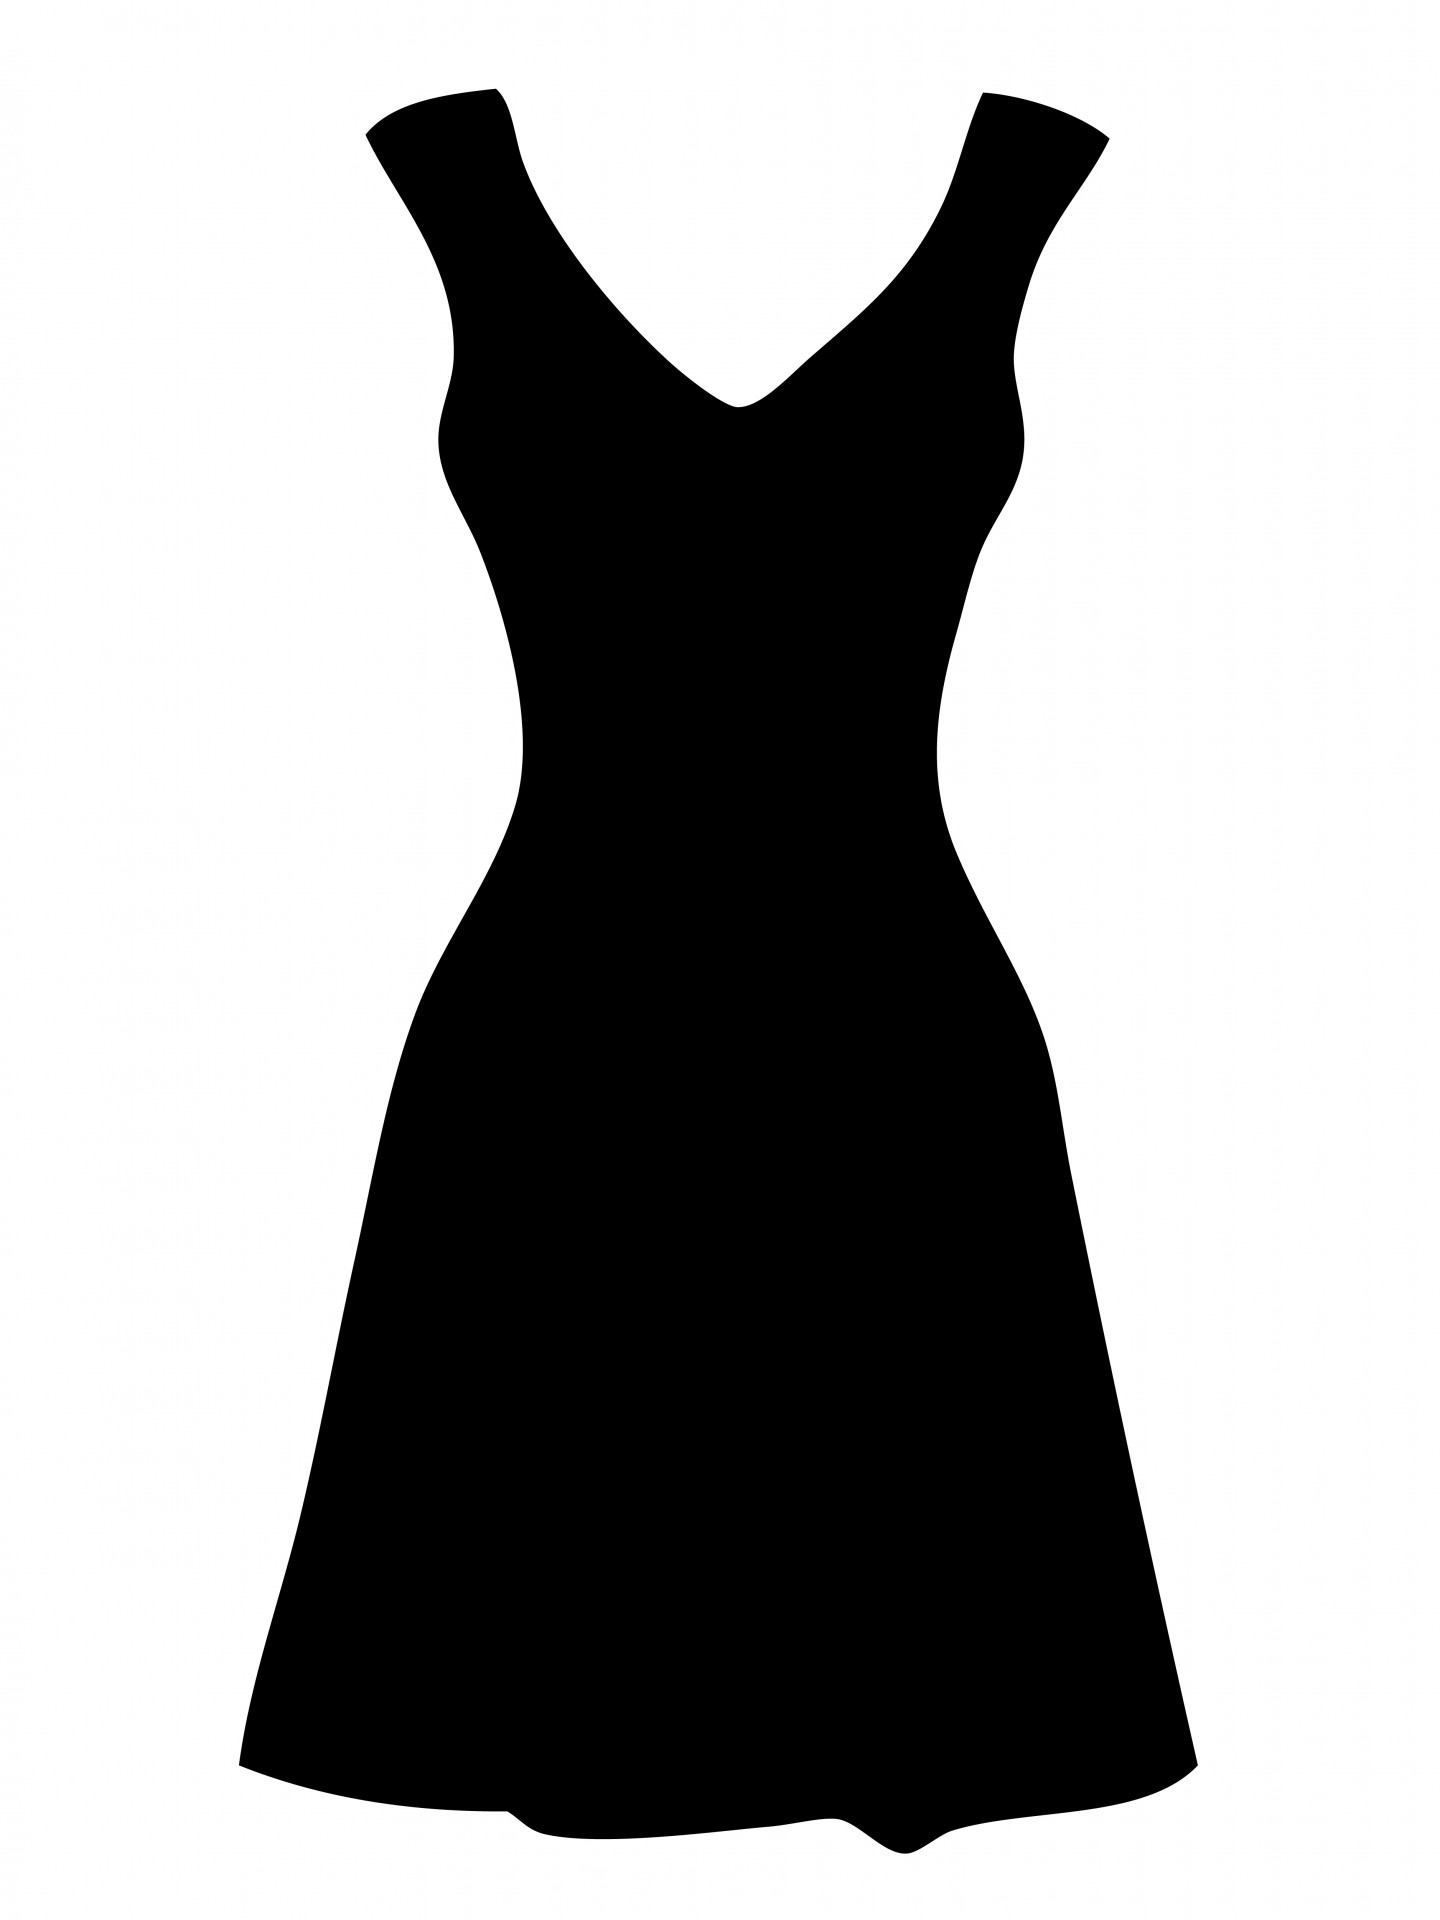 dress clipart black white - photo #3